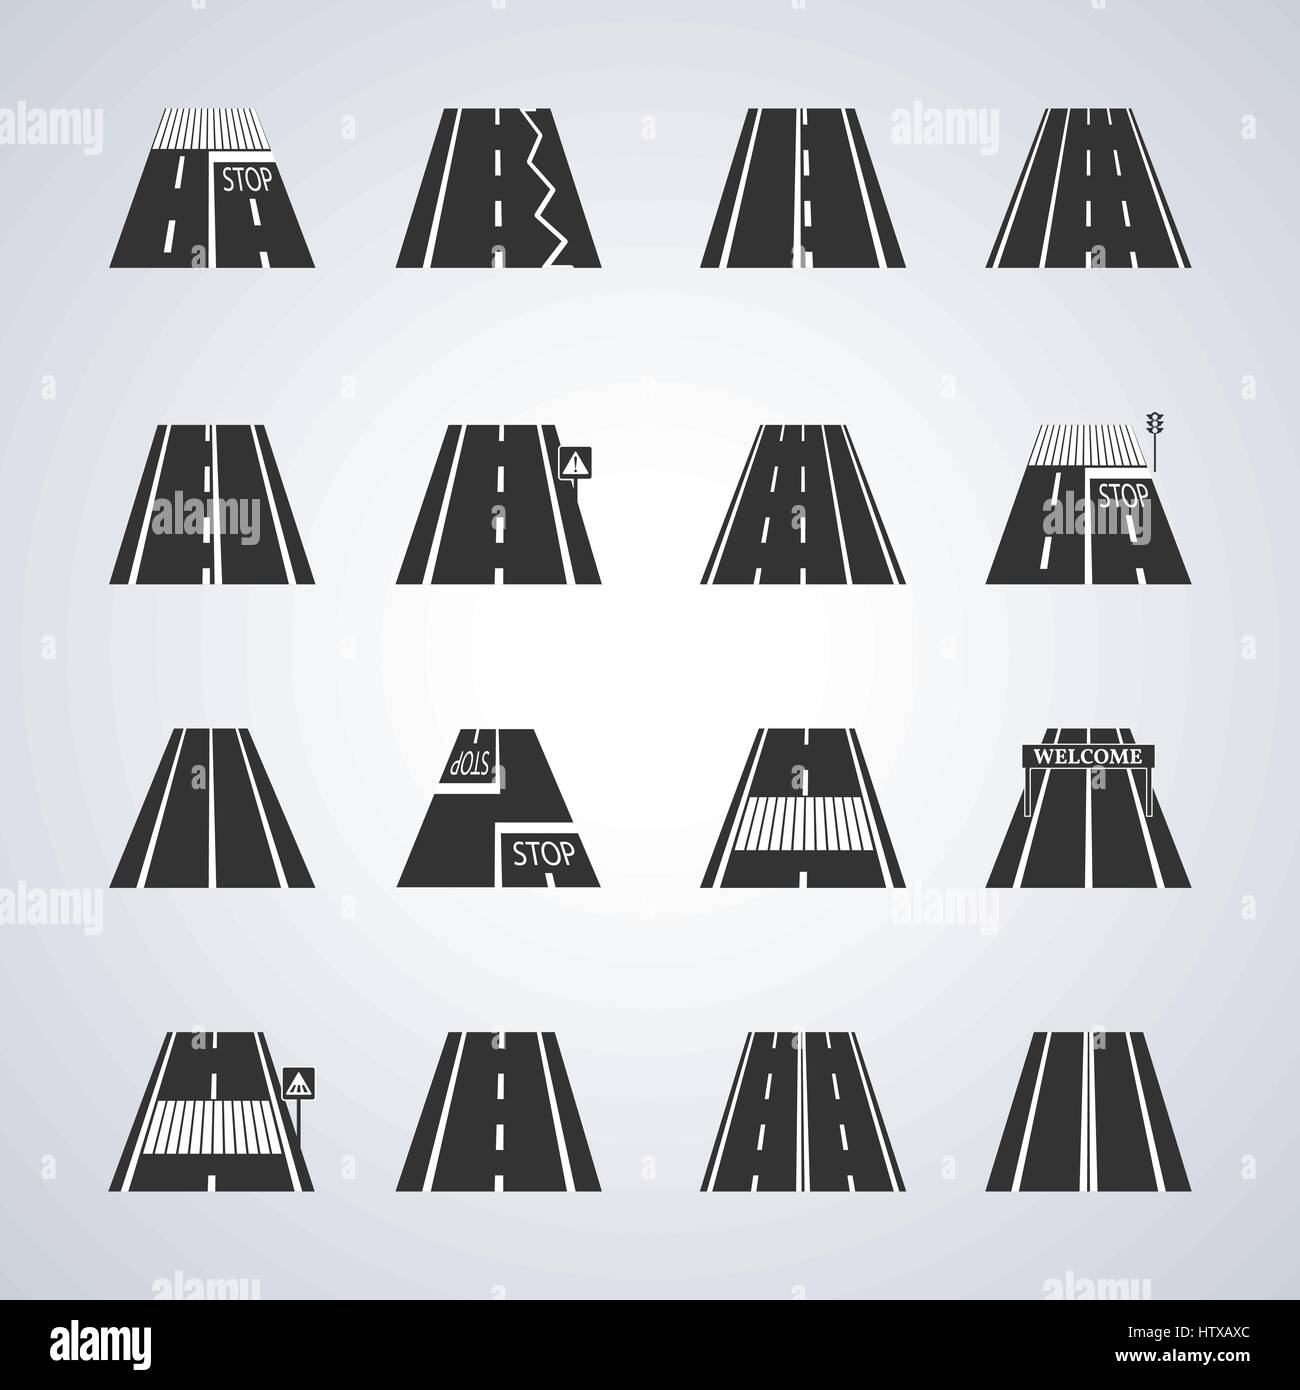 Iconos de la carretera con las marcas y señales de tráfico, ilustración vectorial. Ilustración del Vector